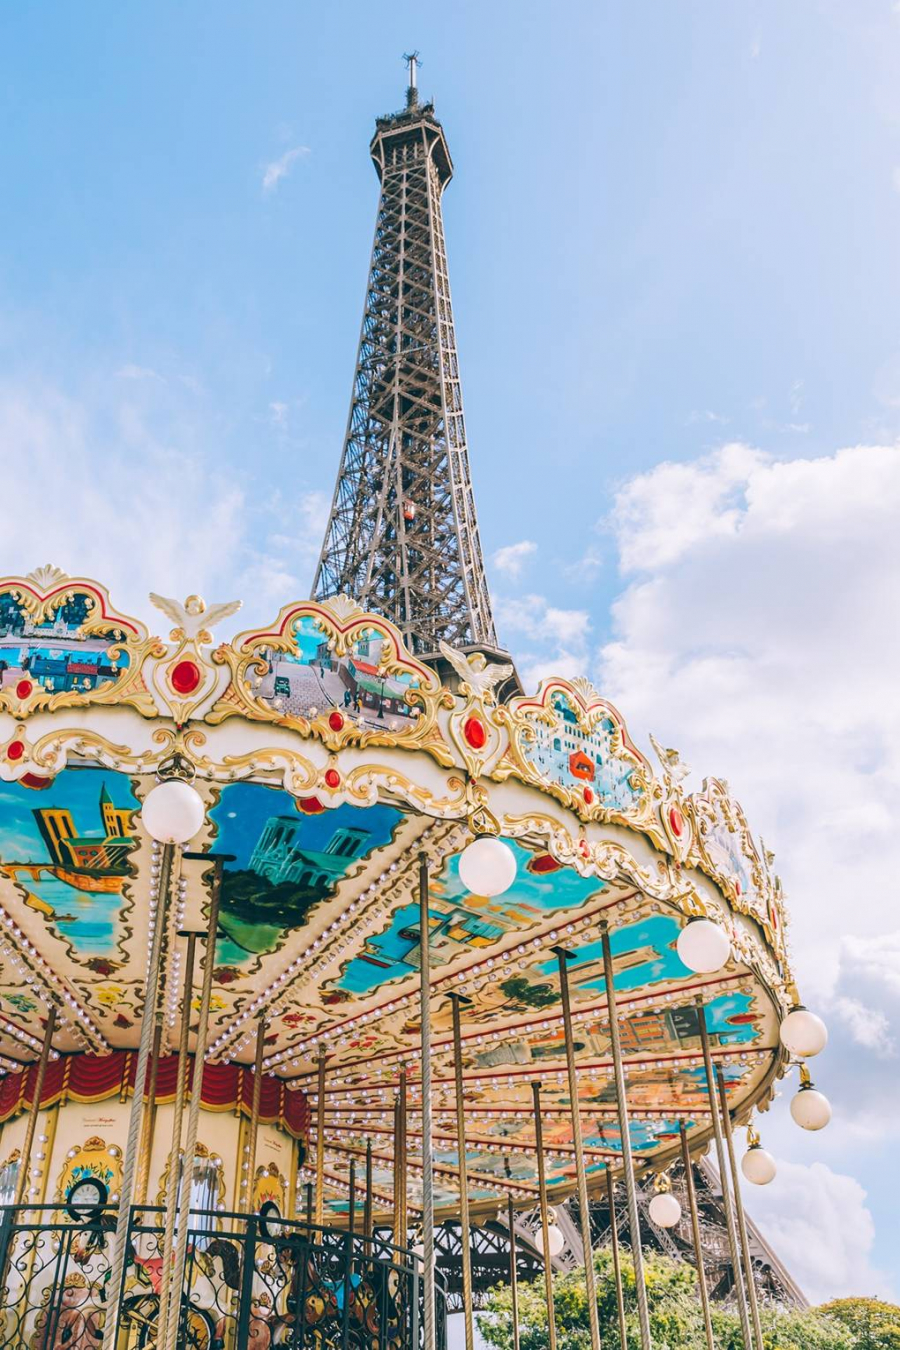 Góc chụp đưa được hình ảnh nhà hát cũ Carousel và Tháp Eiffel, chính là địa điểm đầu tiên giúp bạn có những bức hình đẹp tại thành phố này.